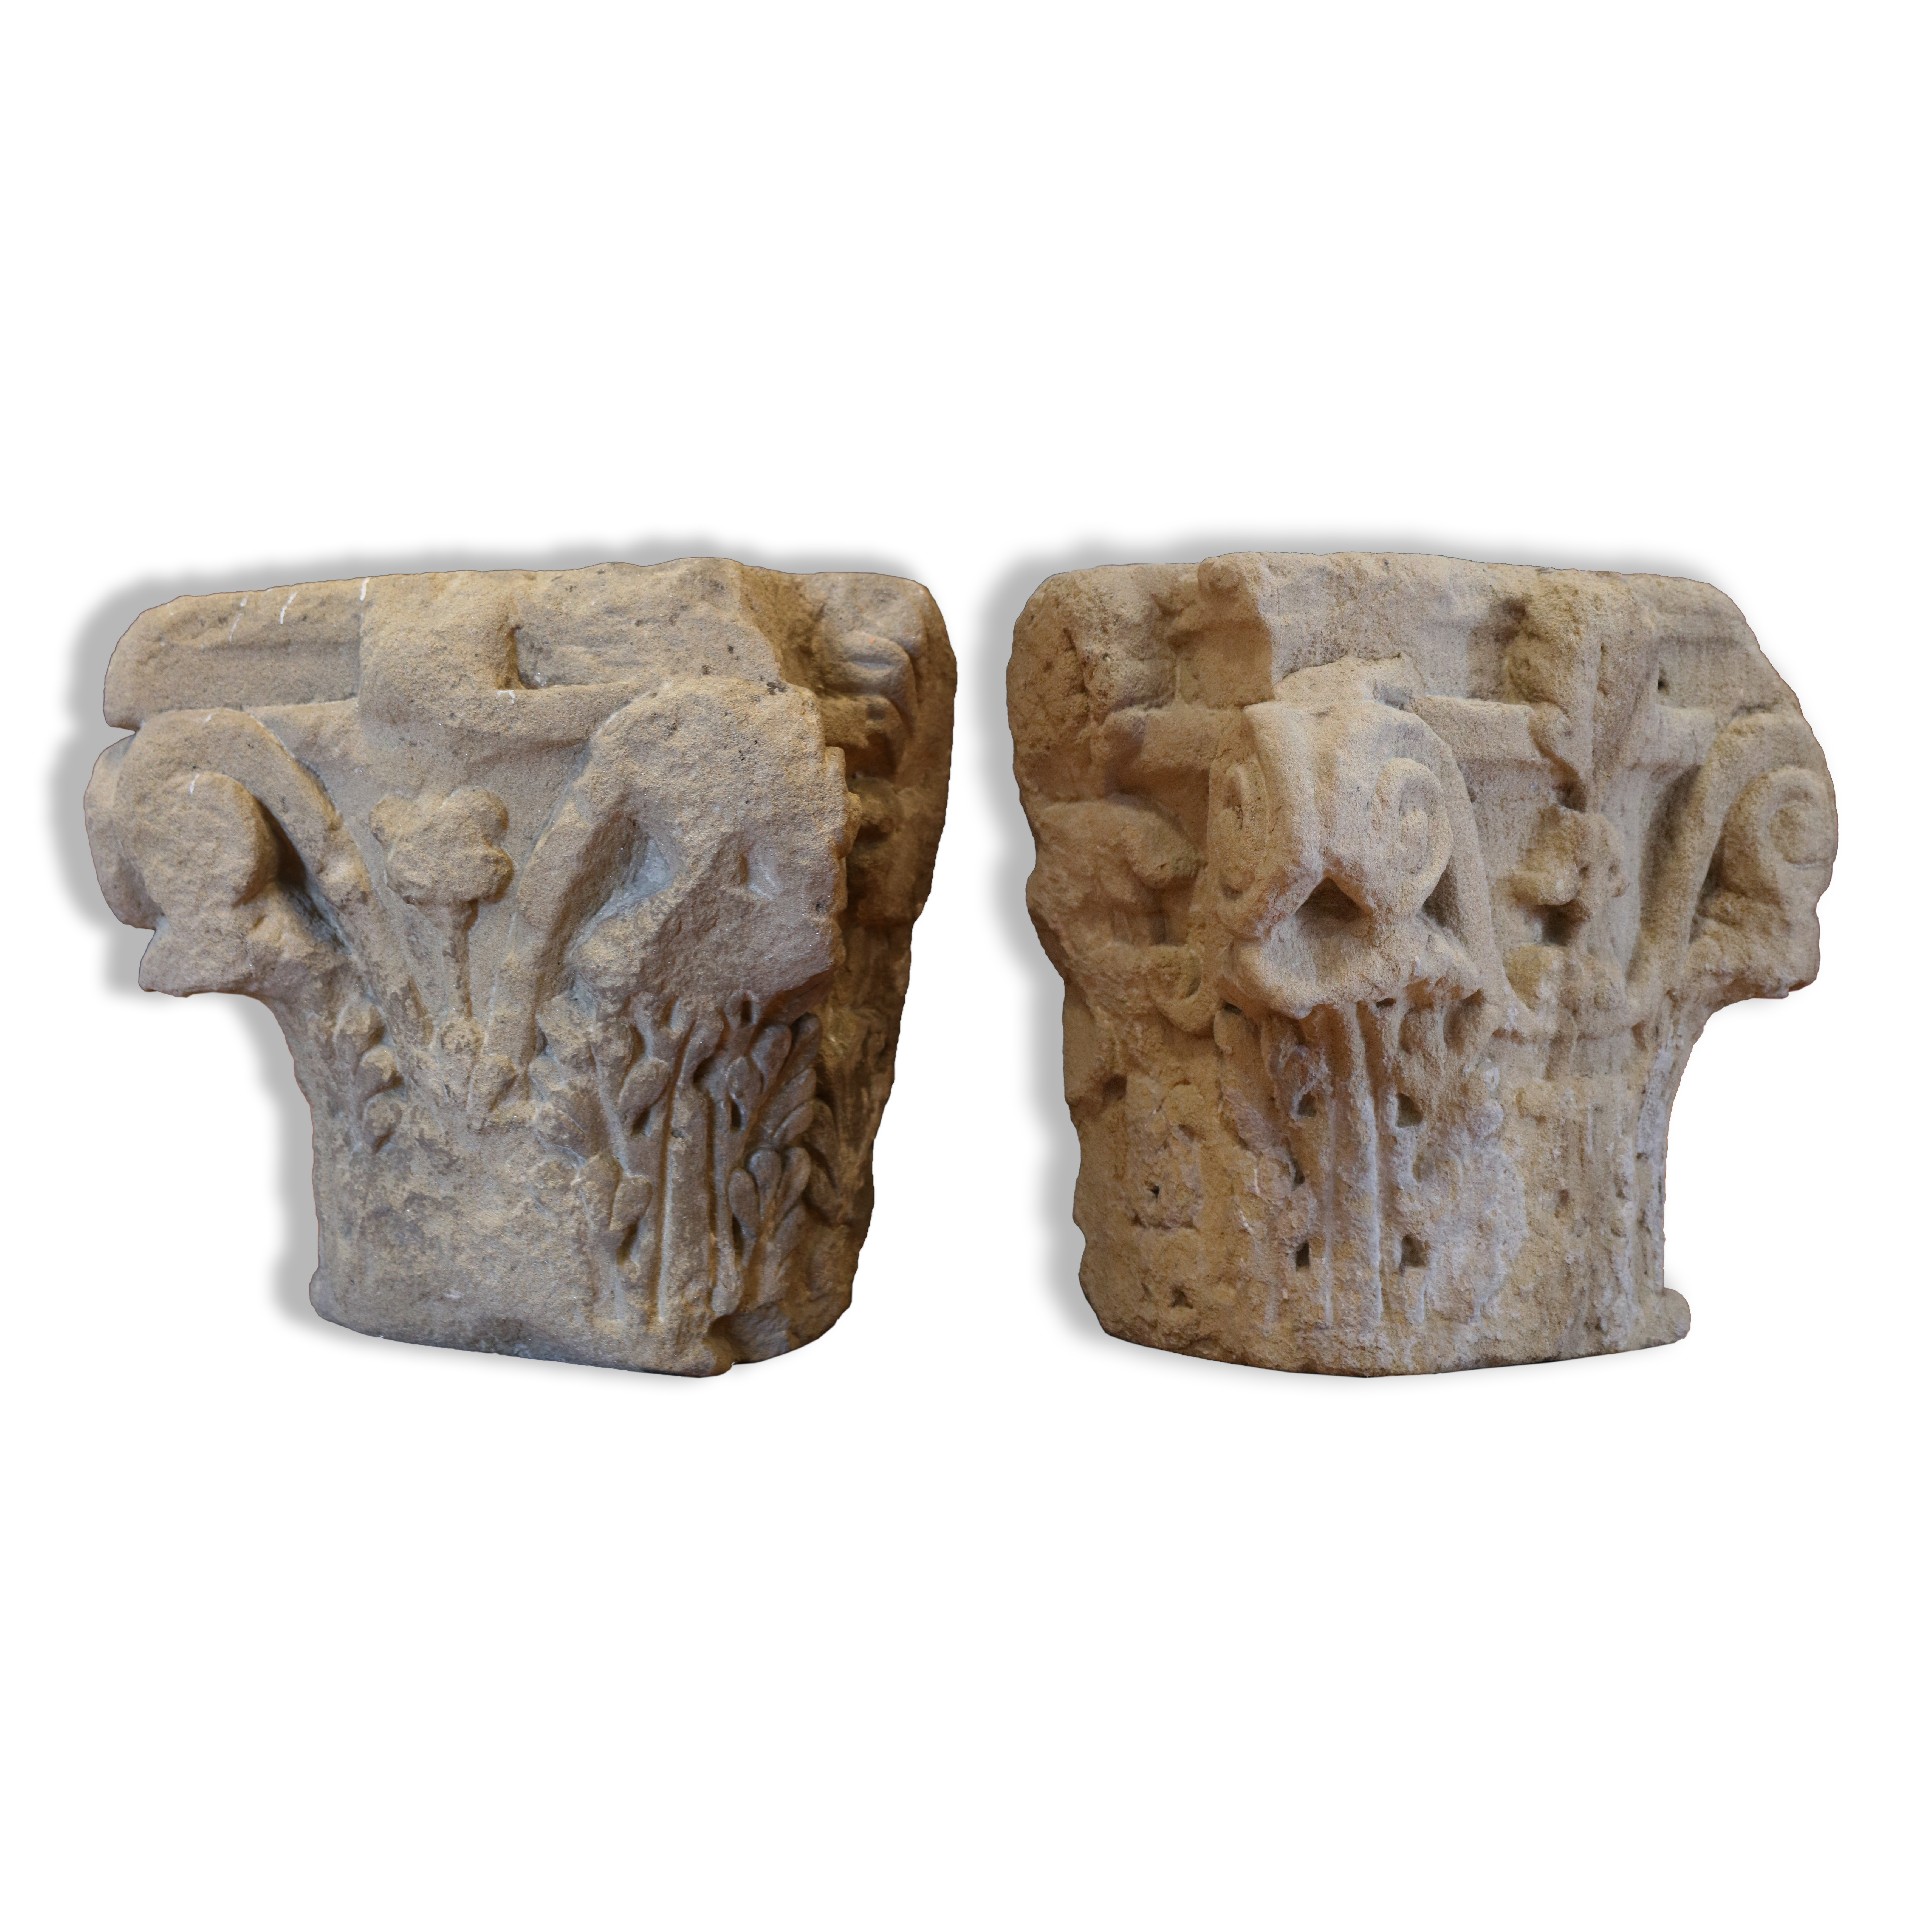 Antica coppia di capitelli in pietra - Capitelli basi per colonne - Architettura - Prodotti - Antichità Fiorillo